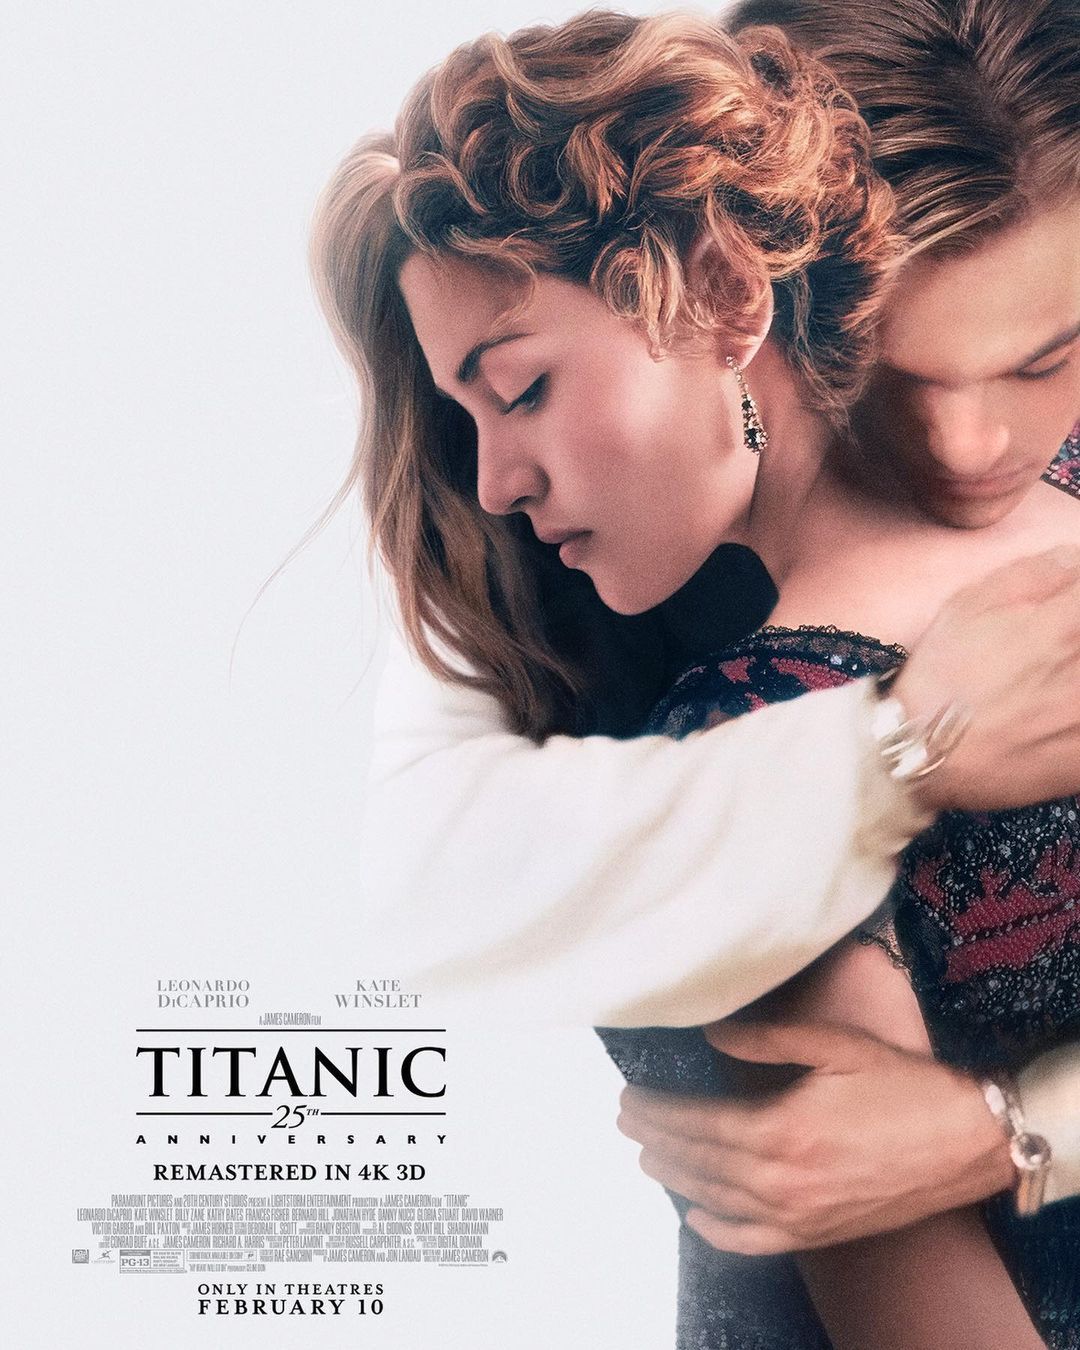 Plakat promujący film Titanic na 25-lecie